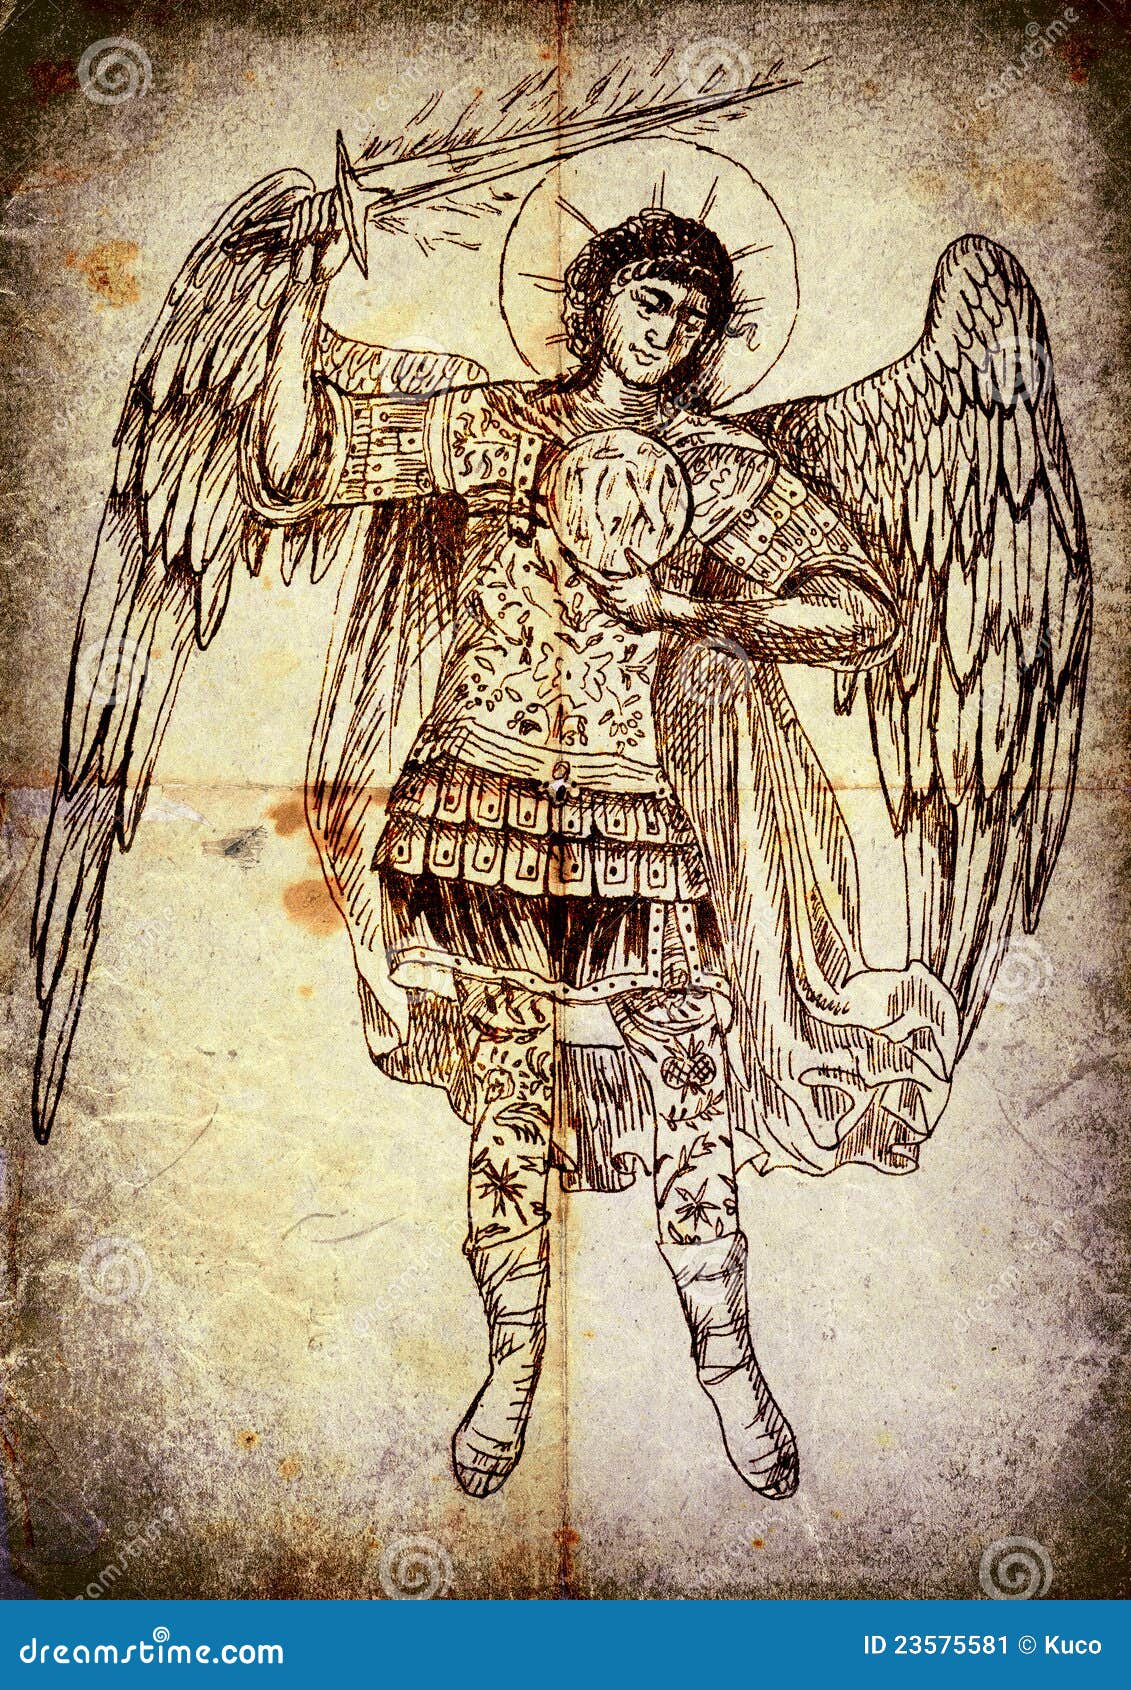 Archangel Uriel by Mukokun on DeviantArt